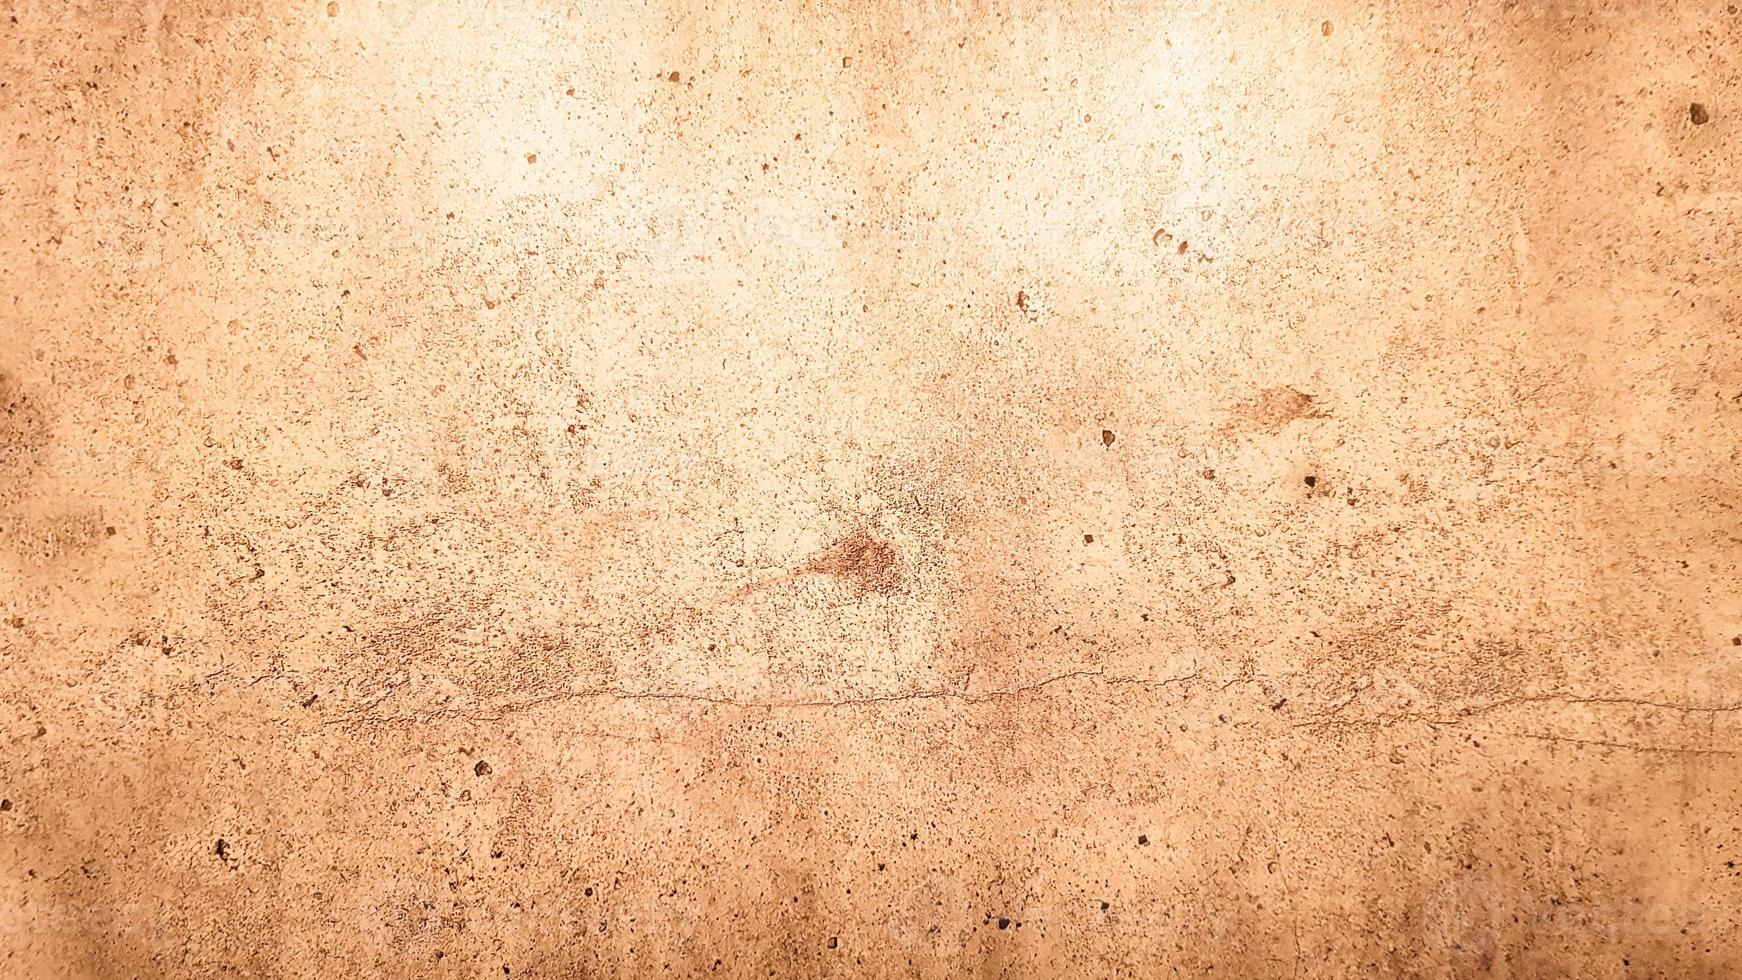 texture de pierre de granit. fond de pierre dorée brune. ancienne surface de mur de pierre vide ou ancien fond de texture de papier brun sale marron ou beige. grunge d'or brun. photo